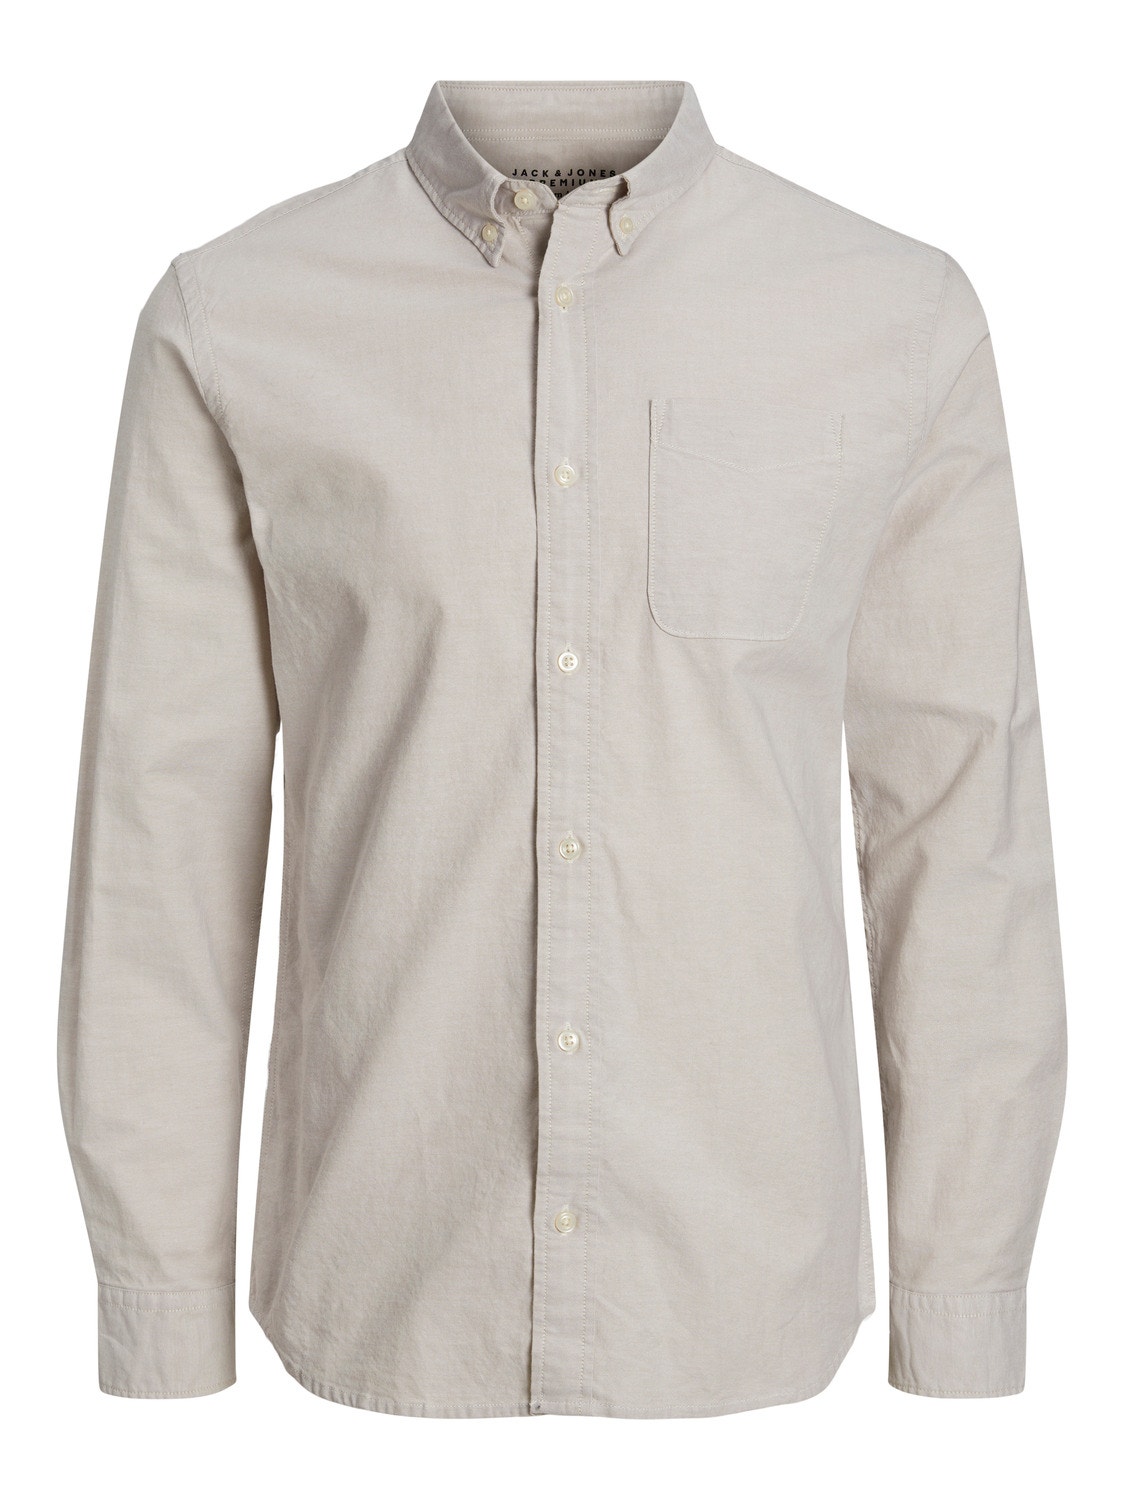 Jack & Jones Camisa formal Slim Fit -Crockery - 12192150